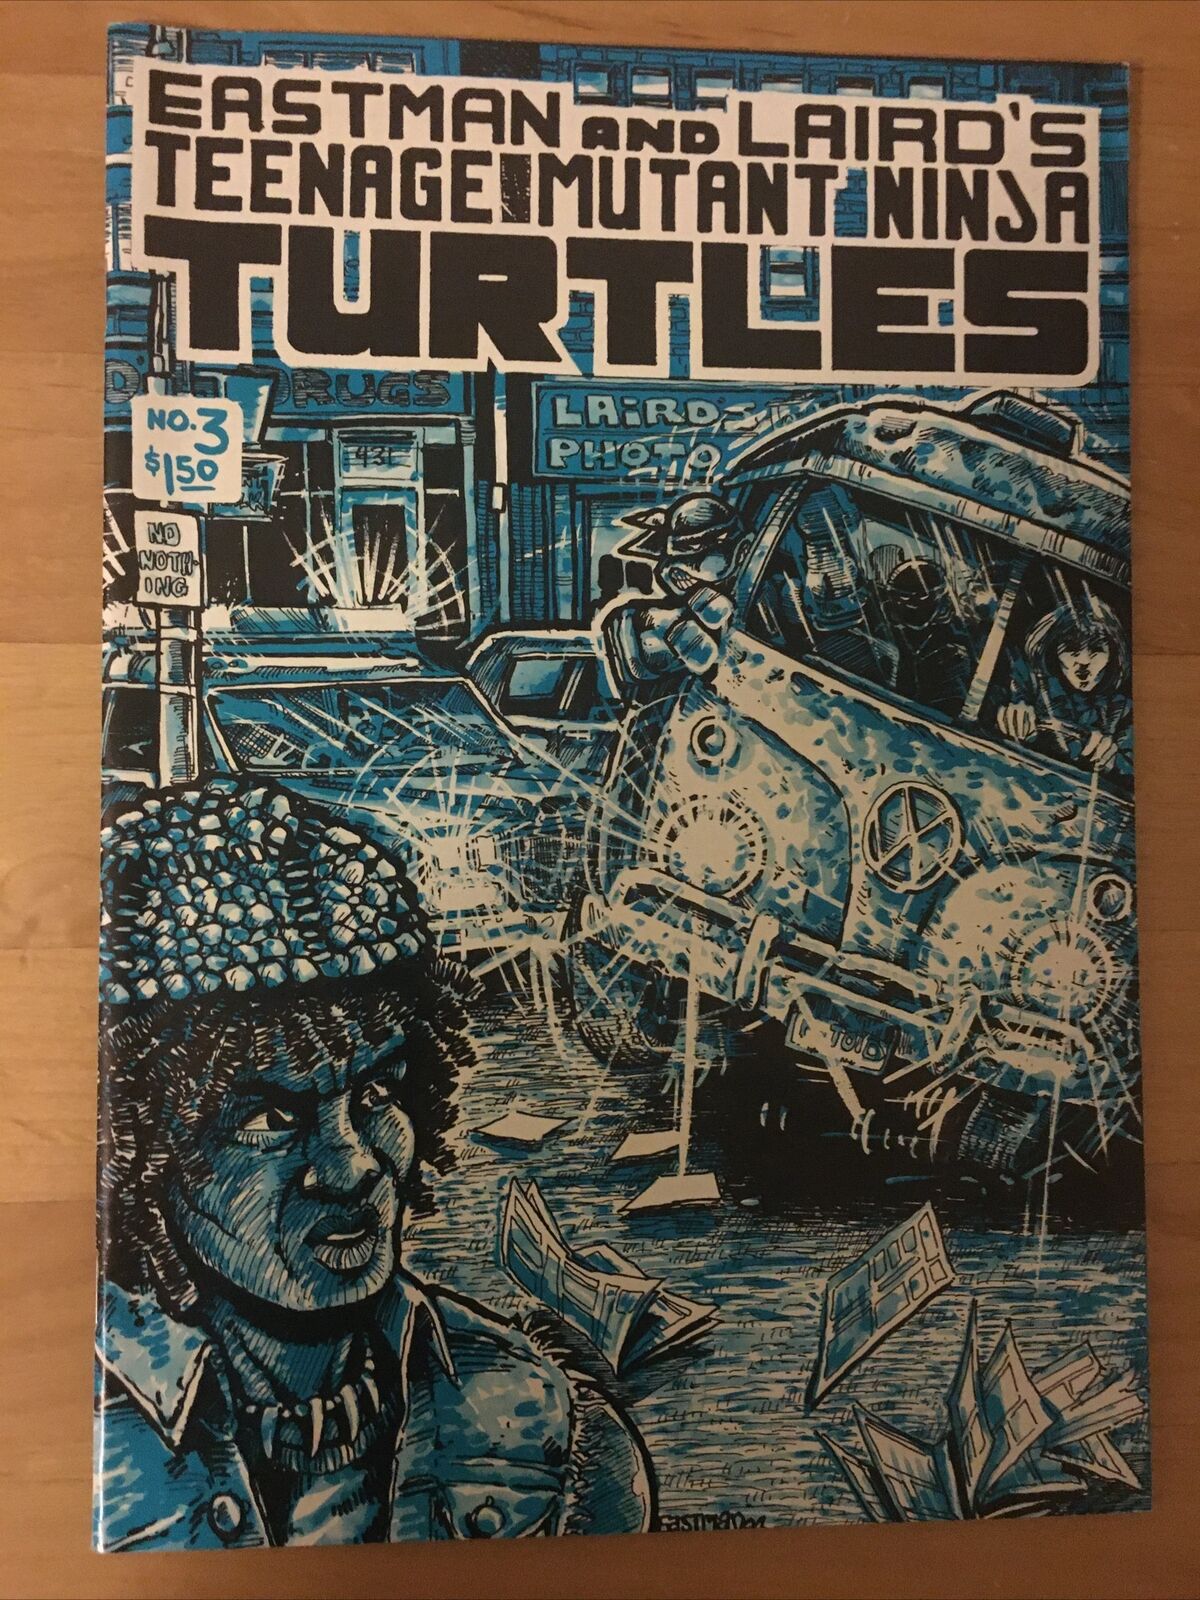 Teenage Mutant Ninja Turtle # 3 comic unbelievably good condition